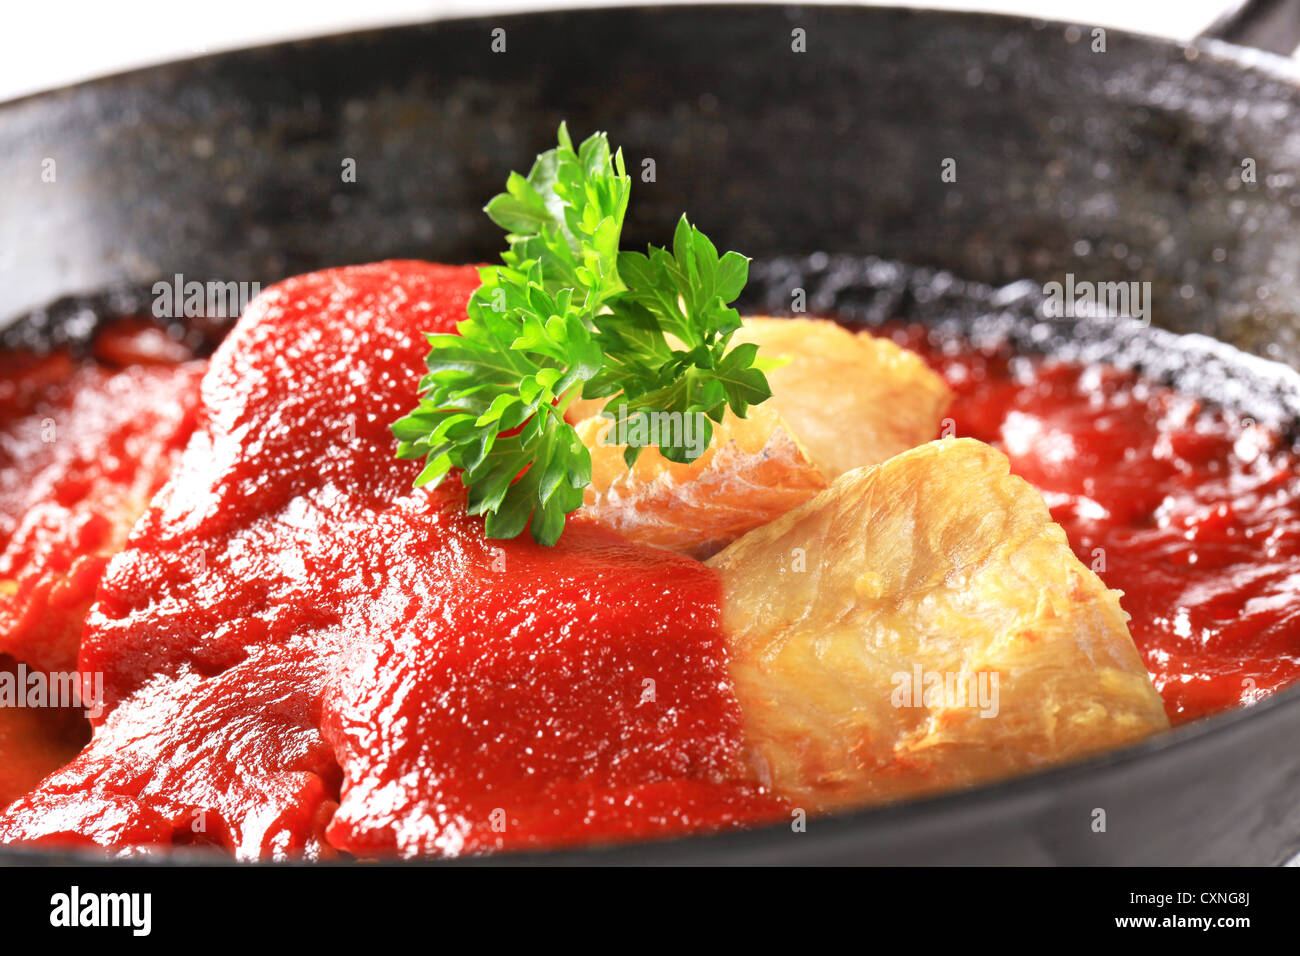 Sartén filetes de pescado en salsa de tomate rico Foto de stock